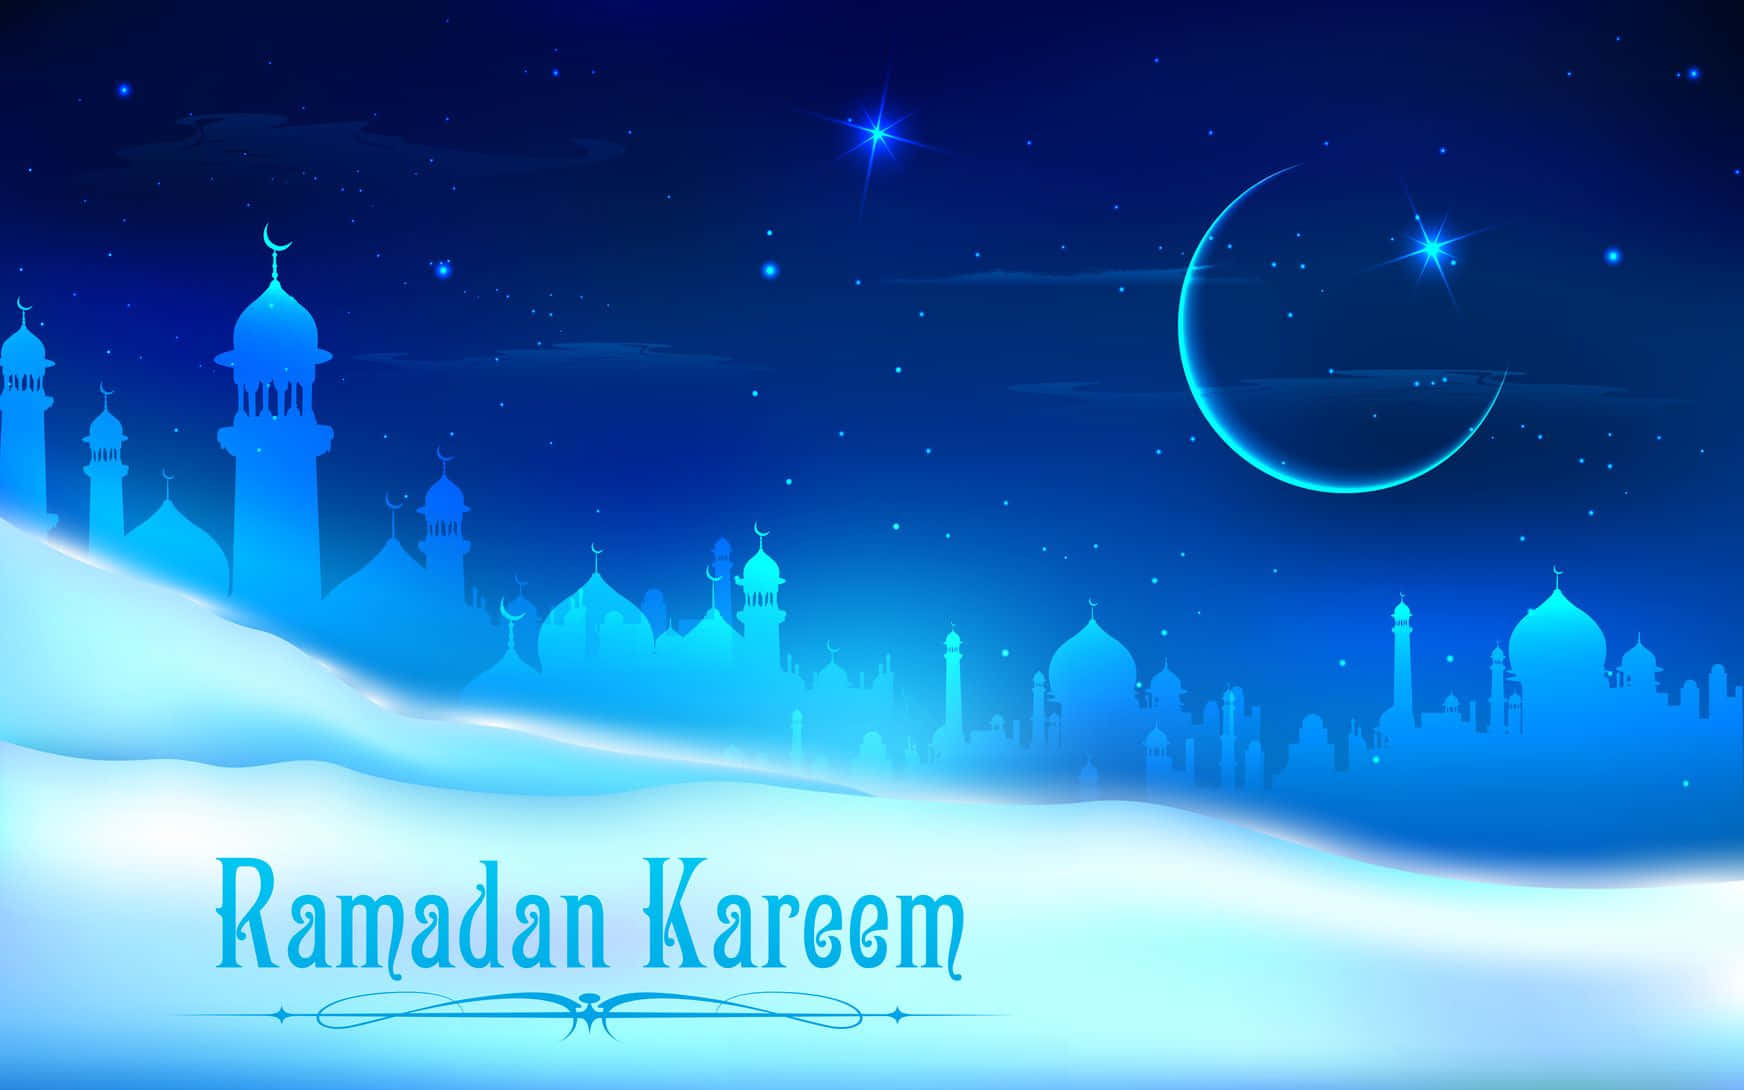 Aceptalo Que El Ramadán Trae, Tanto Lo Que Da Como Lo Que Quita